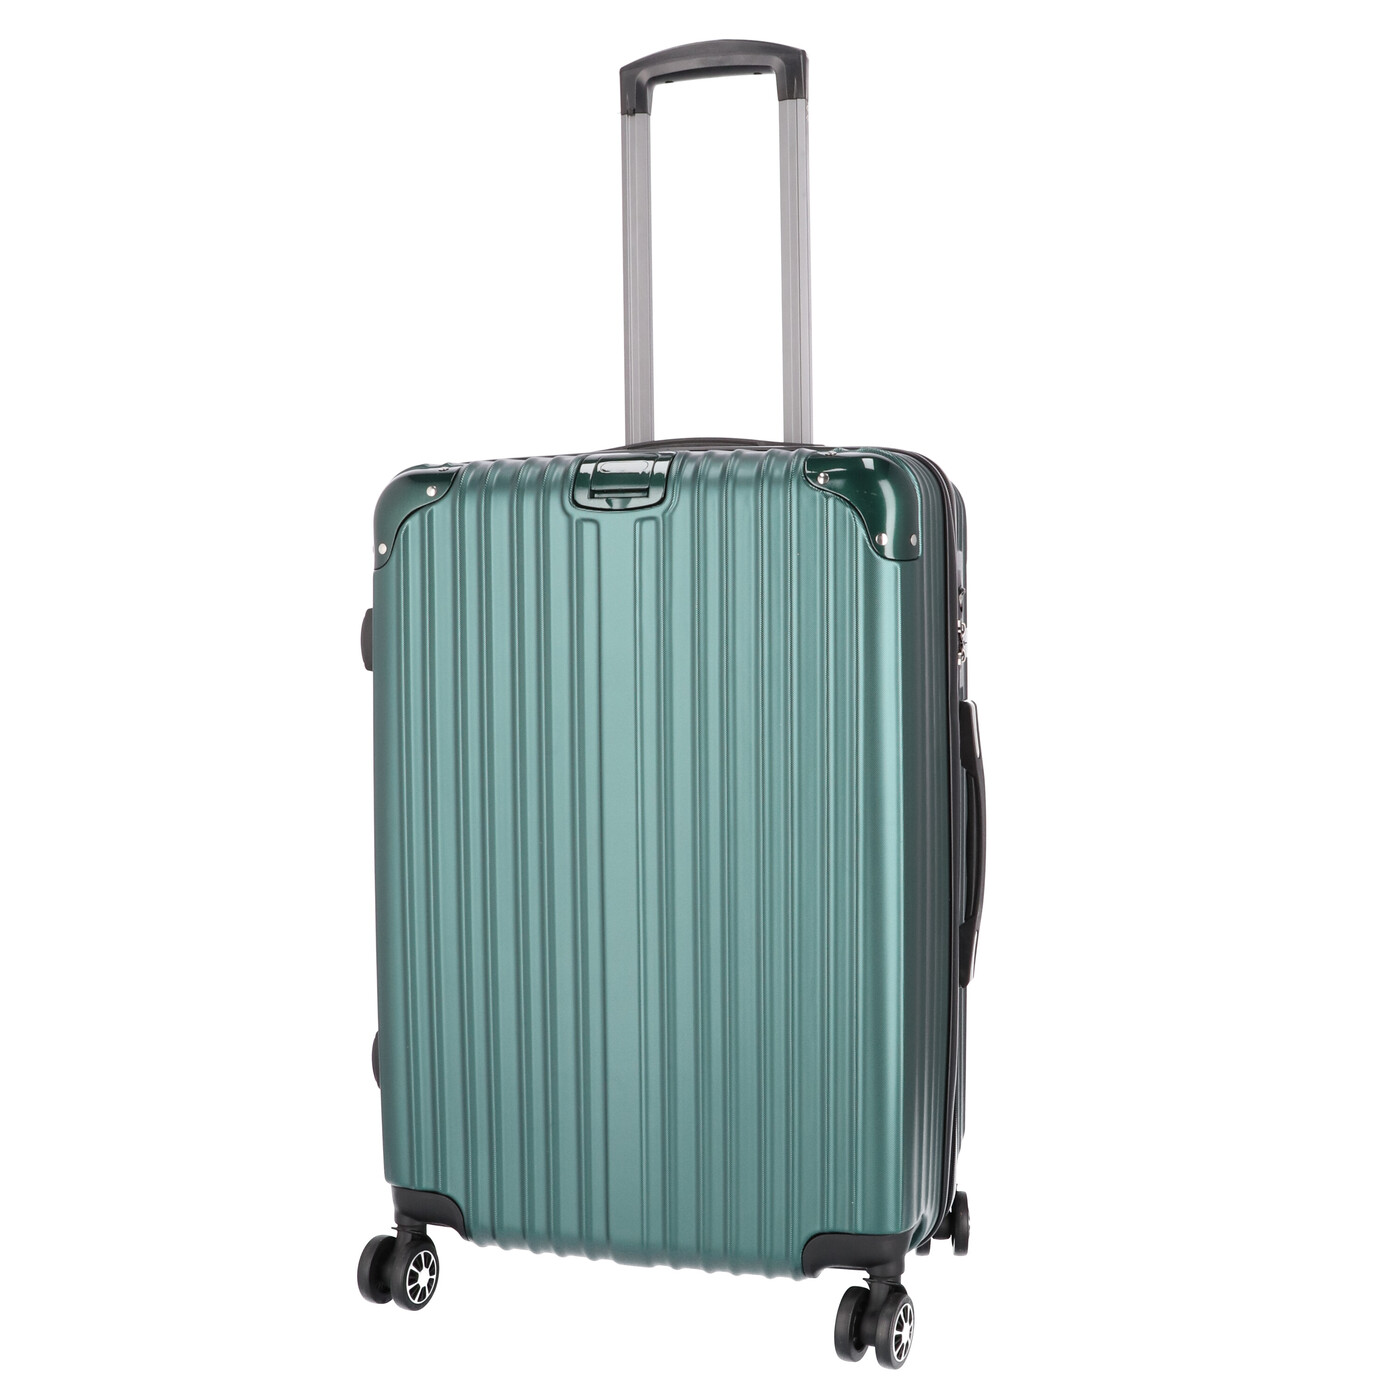 VARNICスーツケースキャリーバッグ 新作アイテム毎日更新